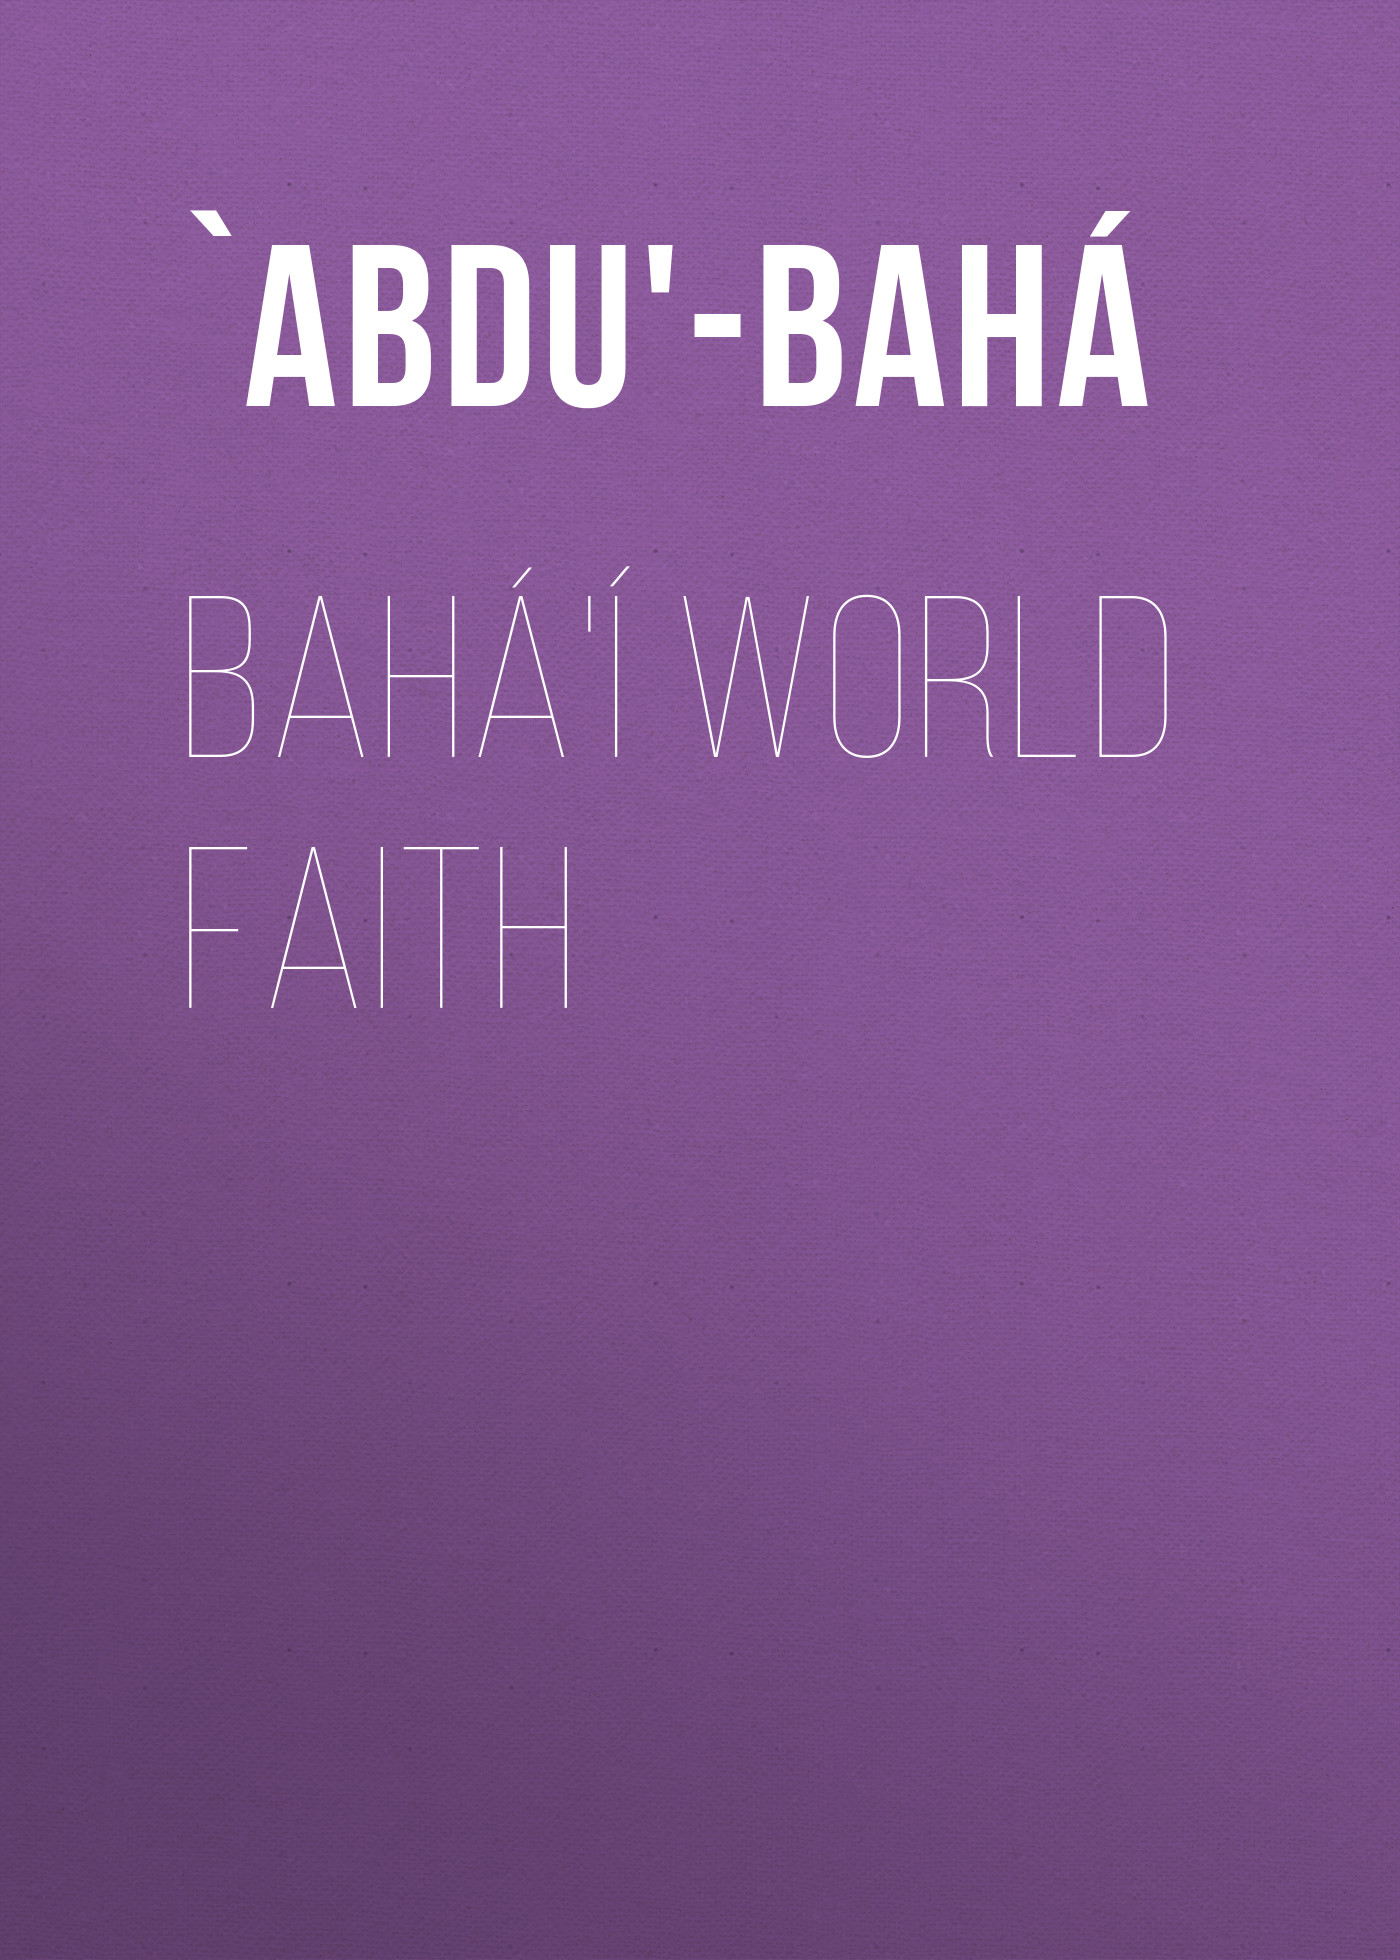 Книга Bahá'í World Faith из серии , созданная  `Abdu'-Bahá, может относится к жанру Зарубежная классика, Зарубежная эзотерическая и религиозная литература, Философия, Историческое фэнтези, Зарубежная психология. Стоимость электронной книги Bahá'í World Faith с идентификатором 36367454 составляет 0 руб.